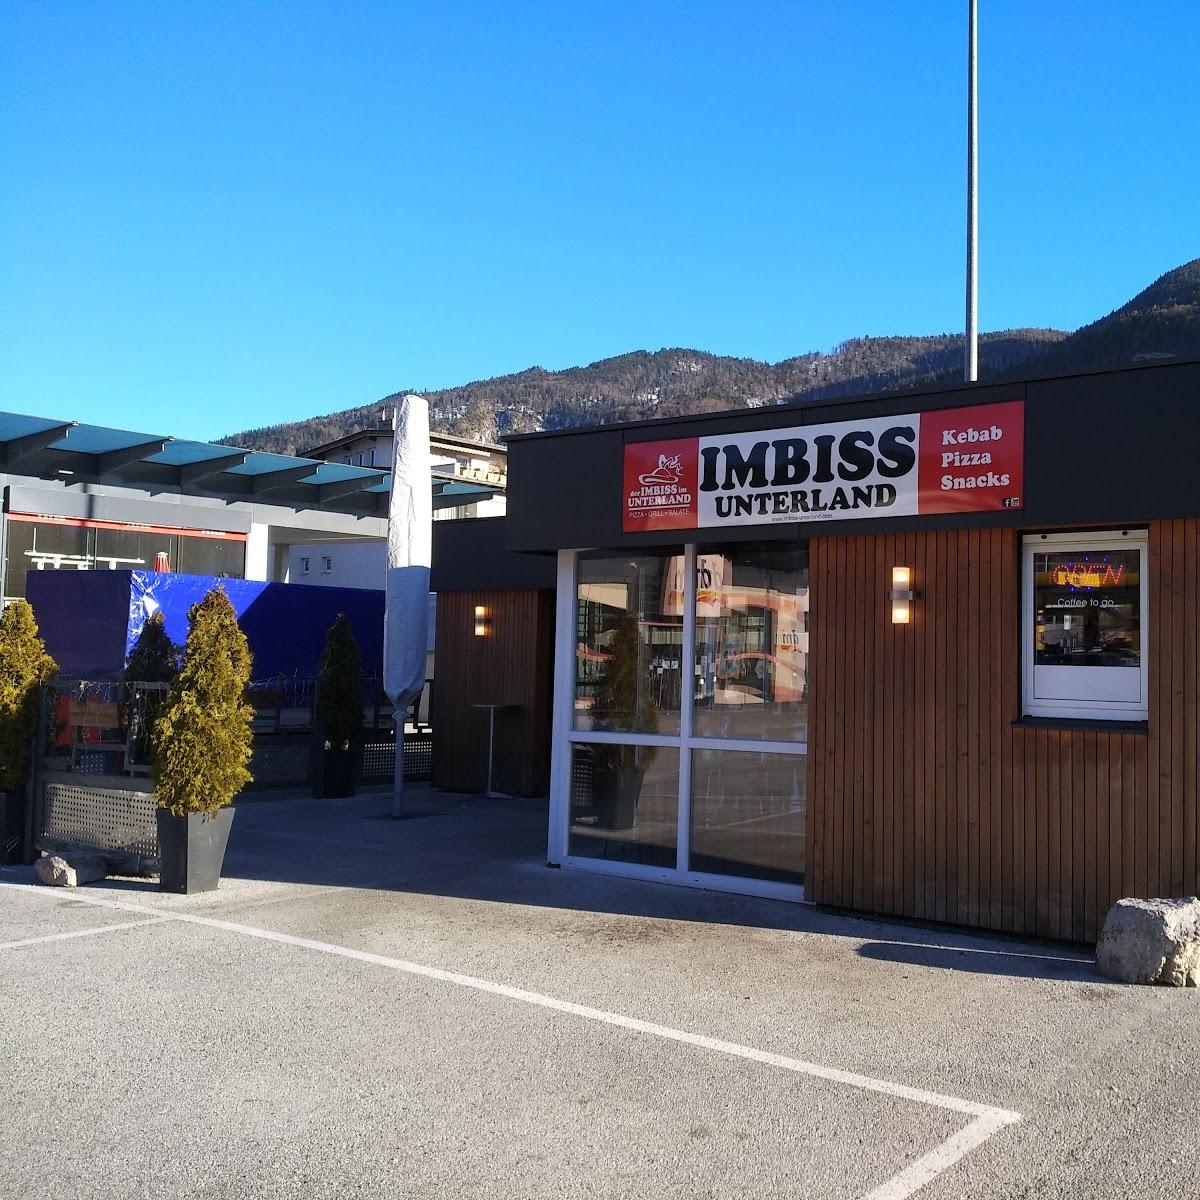 Restaurant "Imbiss Unterland" in Kufstein